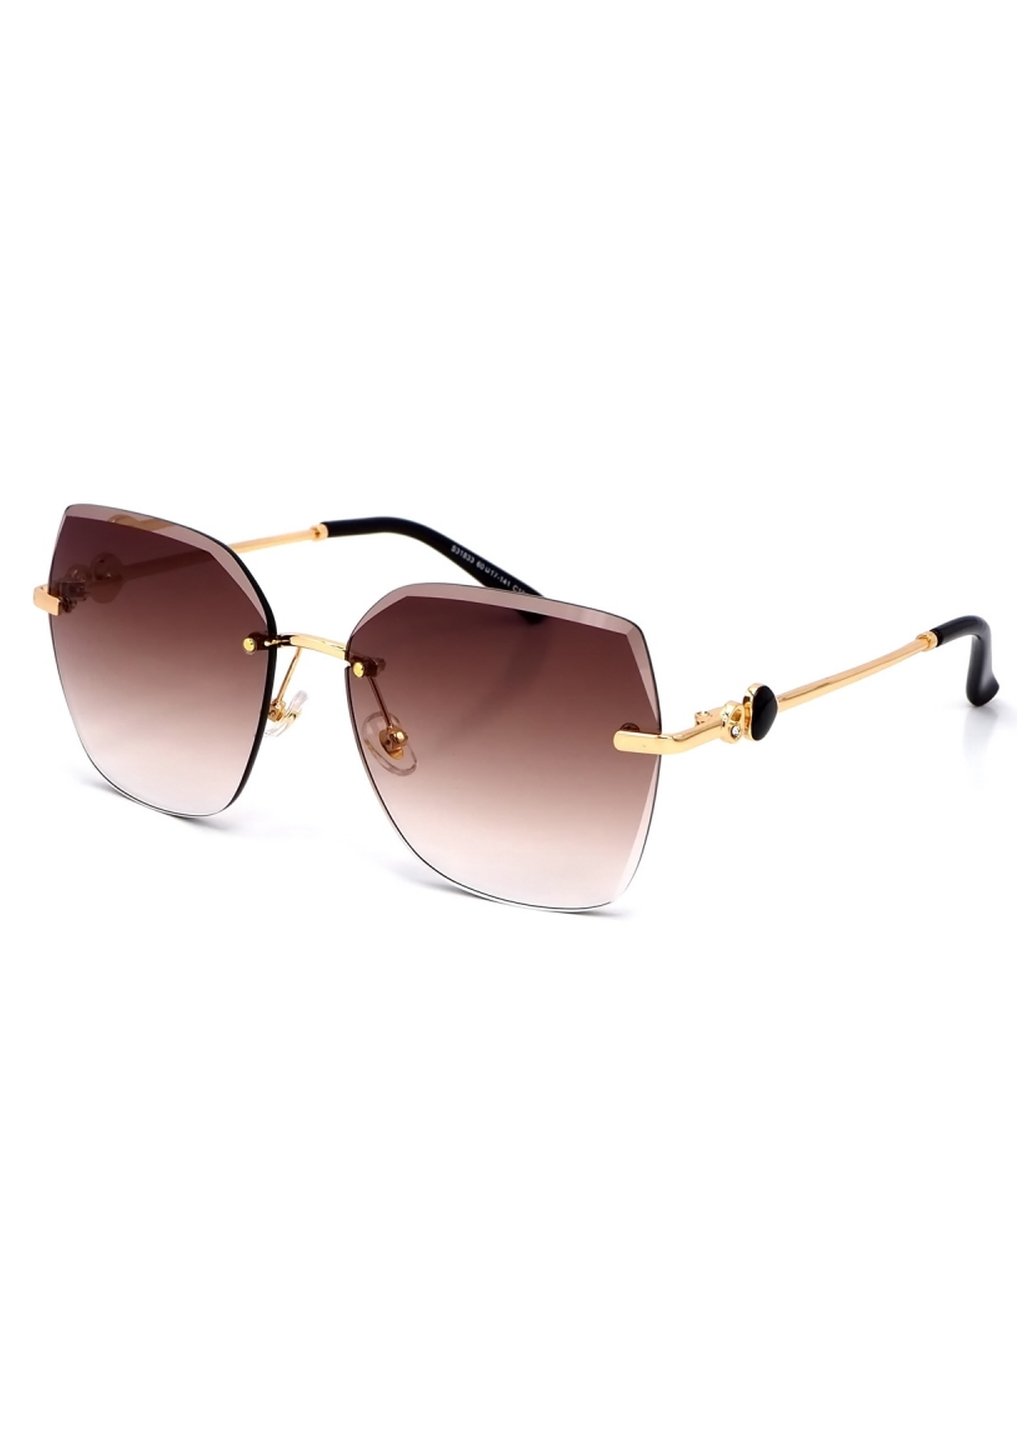 Купить Женские солнцезащитные очки Merlini с поляризацией S31833 117092 - Золотистый в интернет-магазине